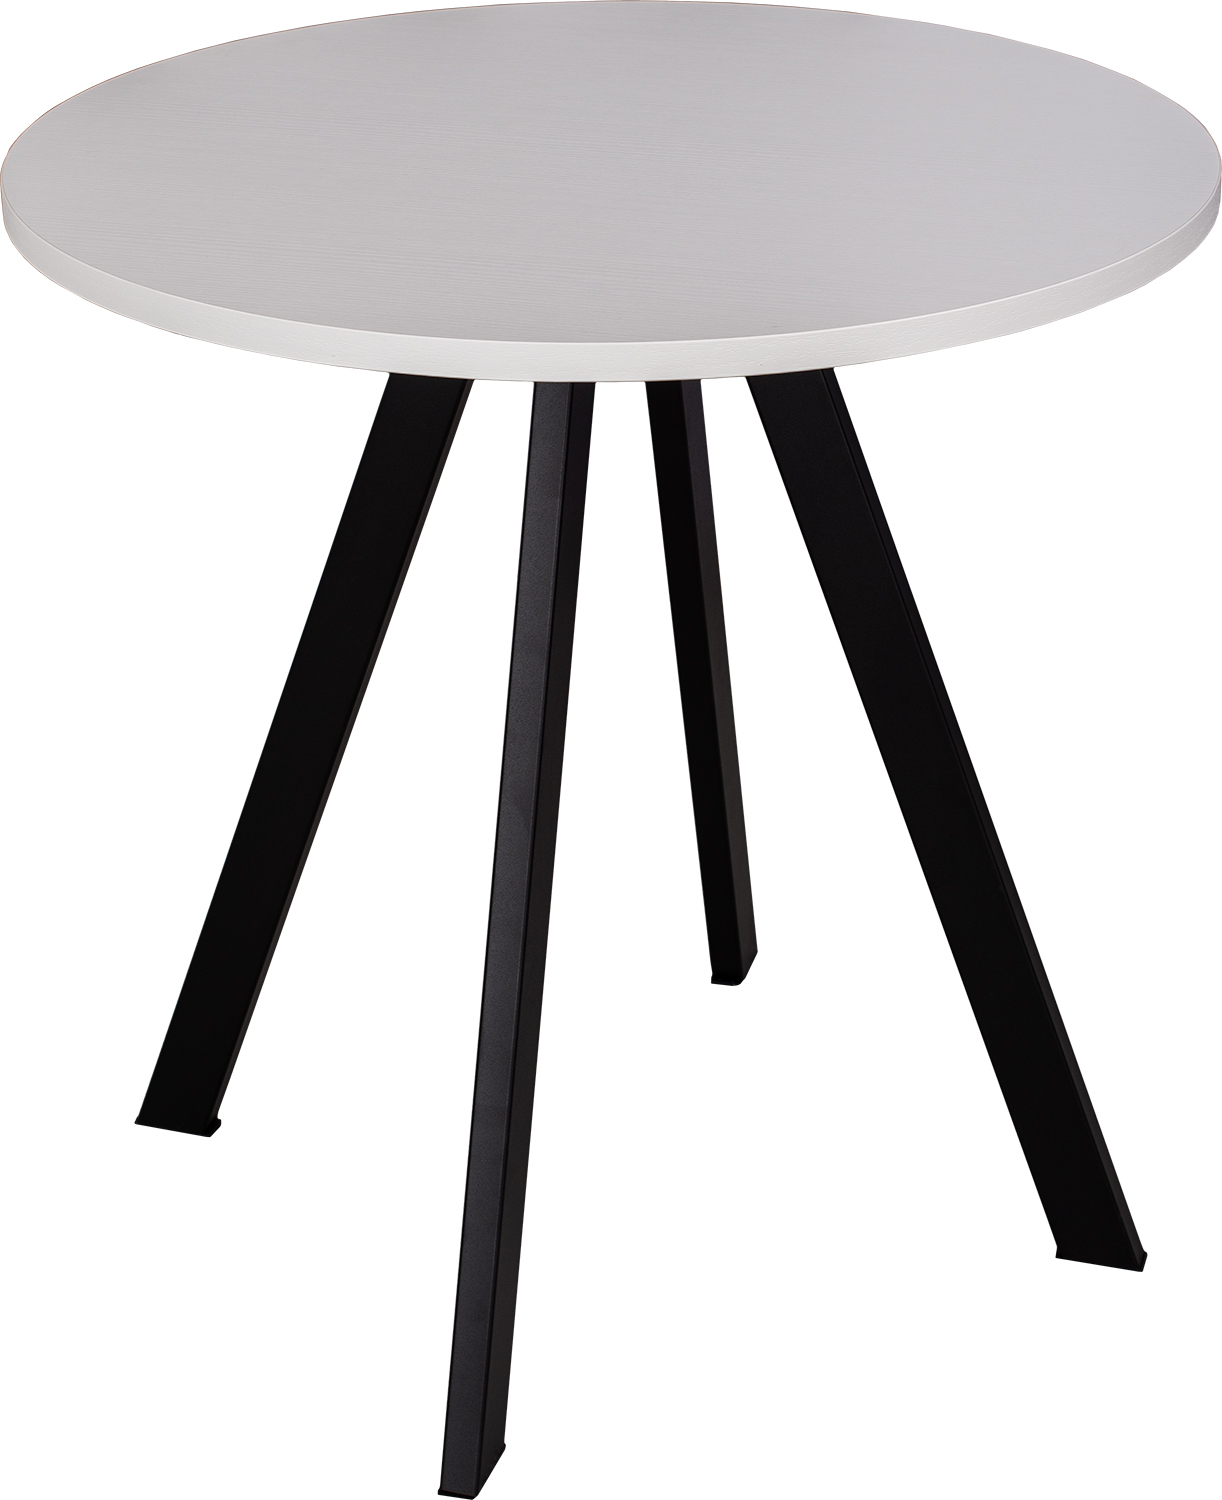 Стол круглый кухонный нераздвижной Дельта К-М БЛ 96 ЧР, нераскладной, белый, черный